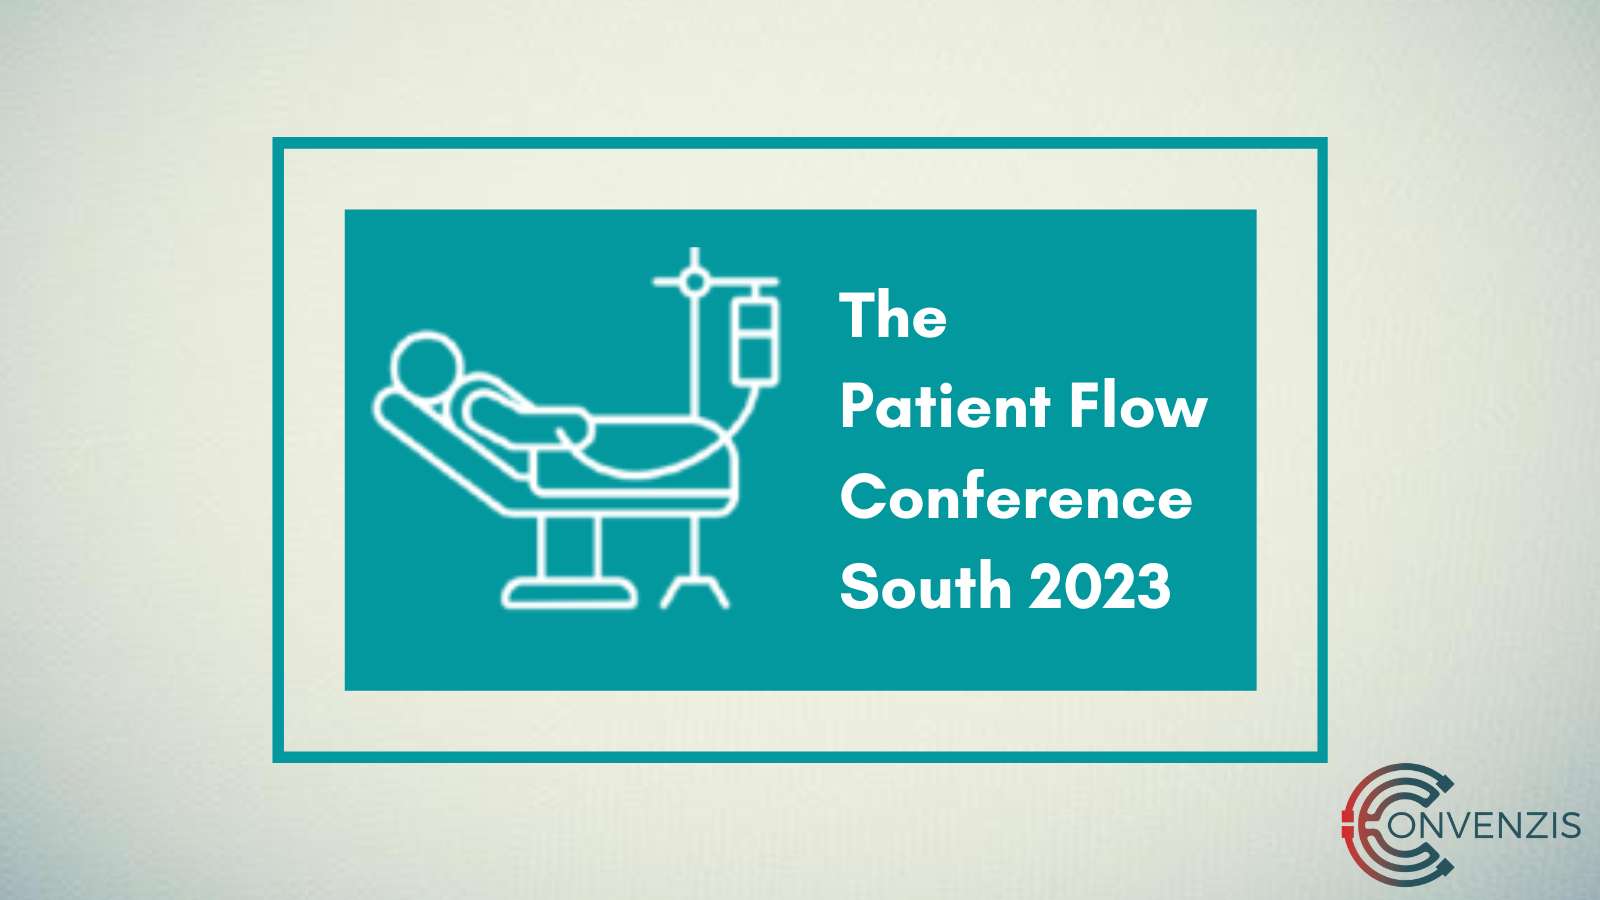 Convenzis Event The Patient Flow Conference 2023